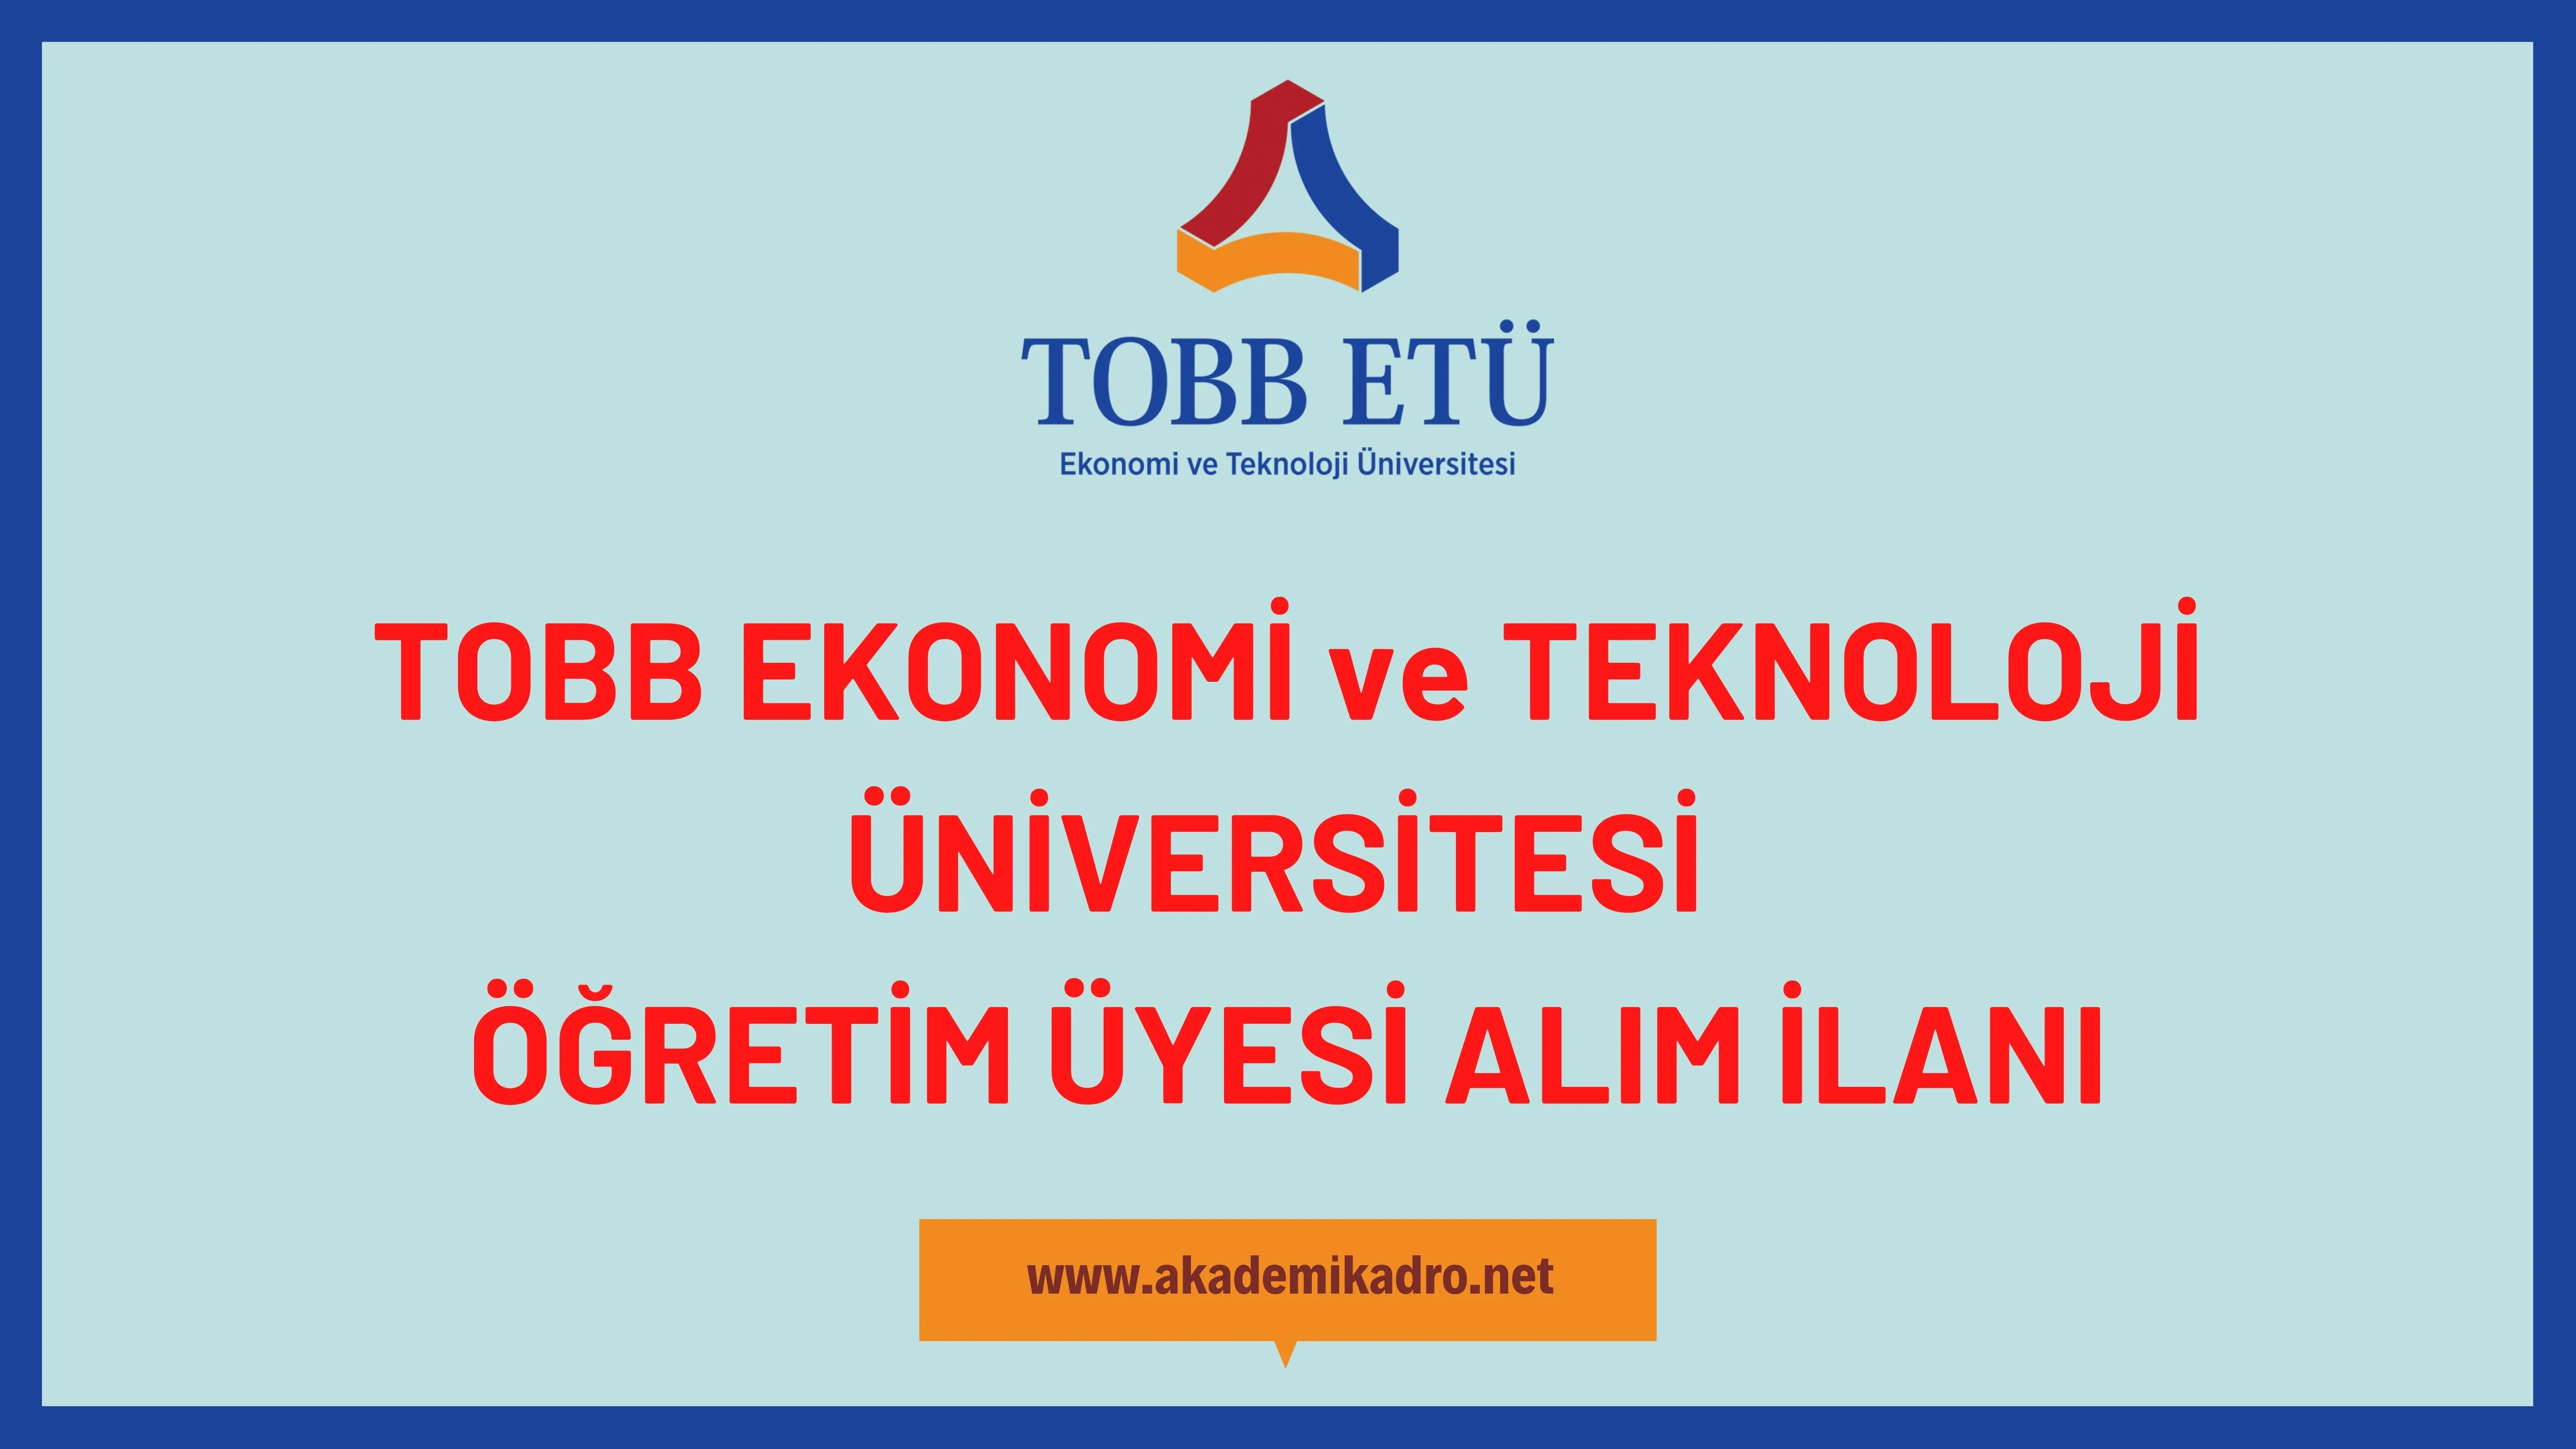 TOBB Ekonomi ve Teknoloji Üniversitesi 14 öğretim üyesi alacaktır.